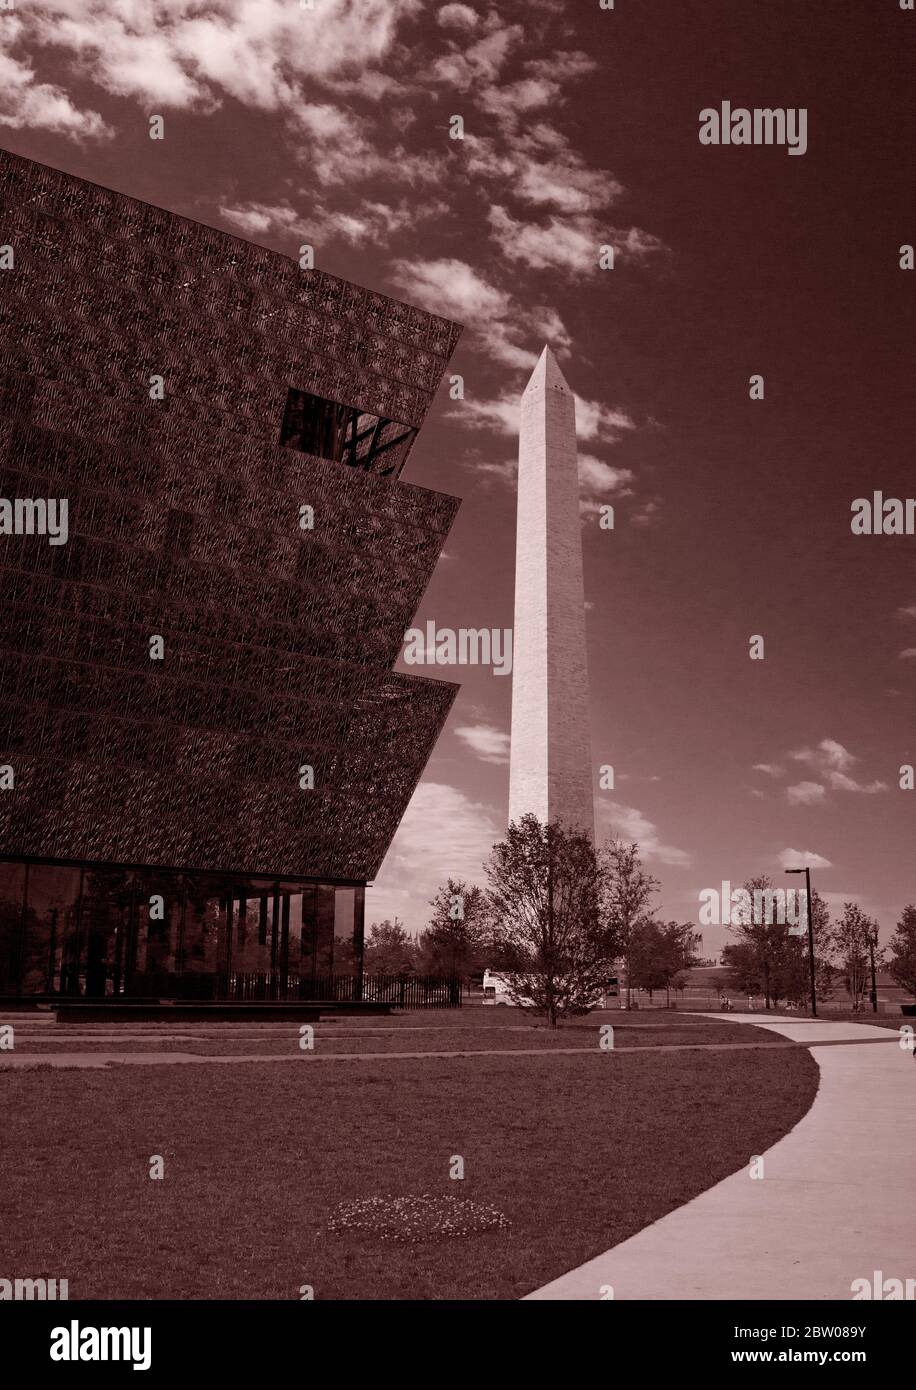 Museo Nacional de Historia y Cultura Afroamericana, Smithsonian, con el Monumento a Washington al fondo. Fotografía vertical. Foto de stock